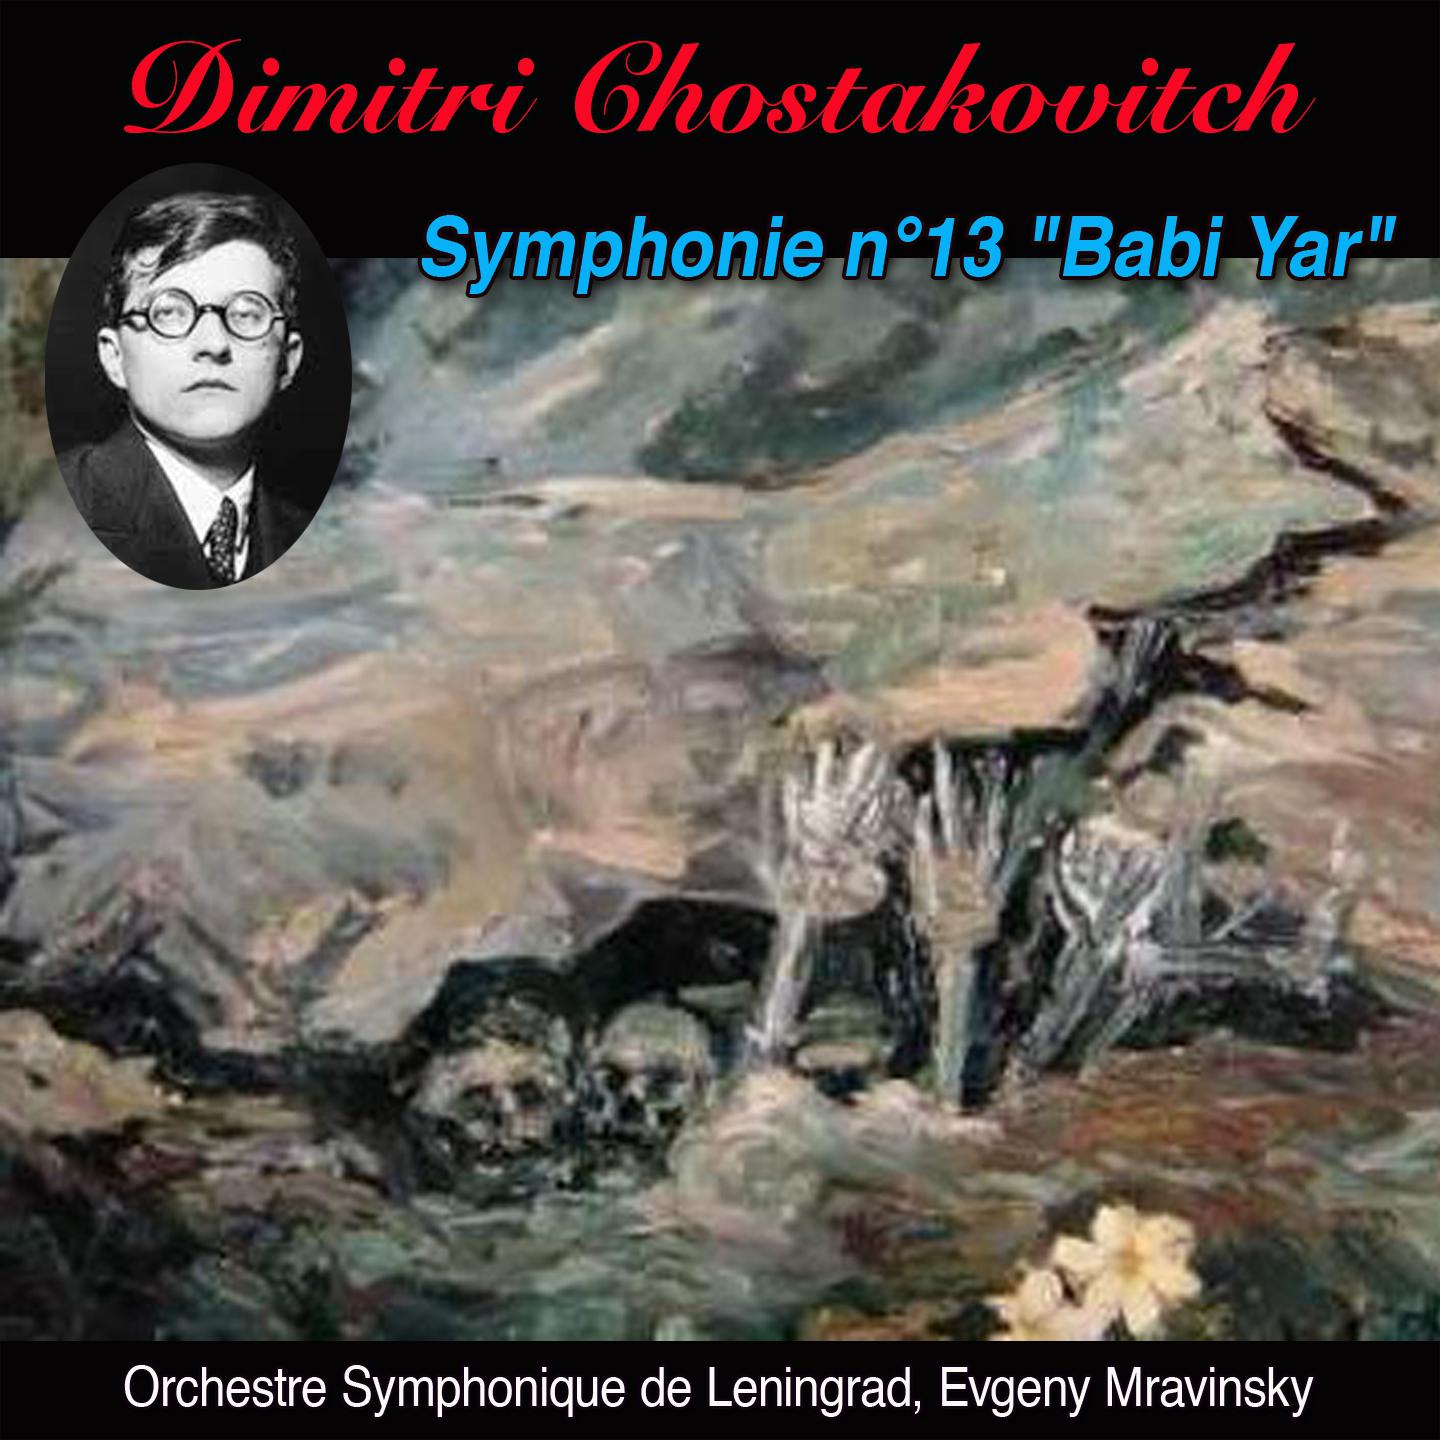 Babi yar allegretto Symphonie n 13 op. 113 " Babi yar"